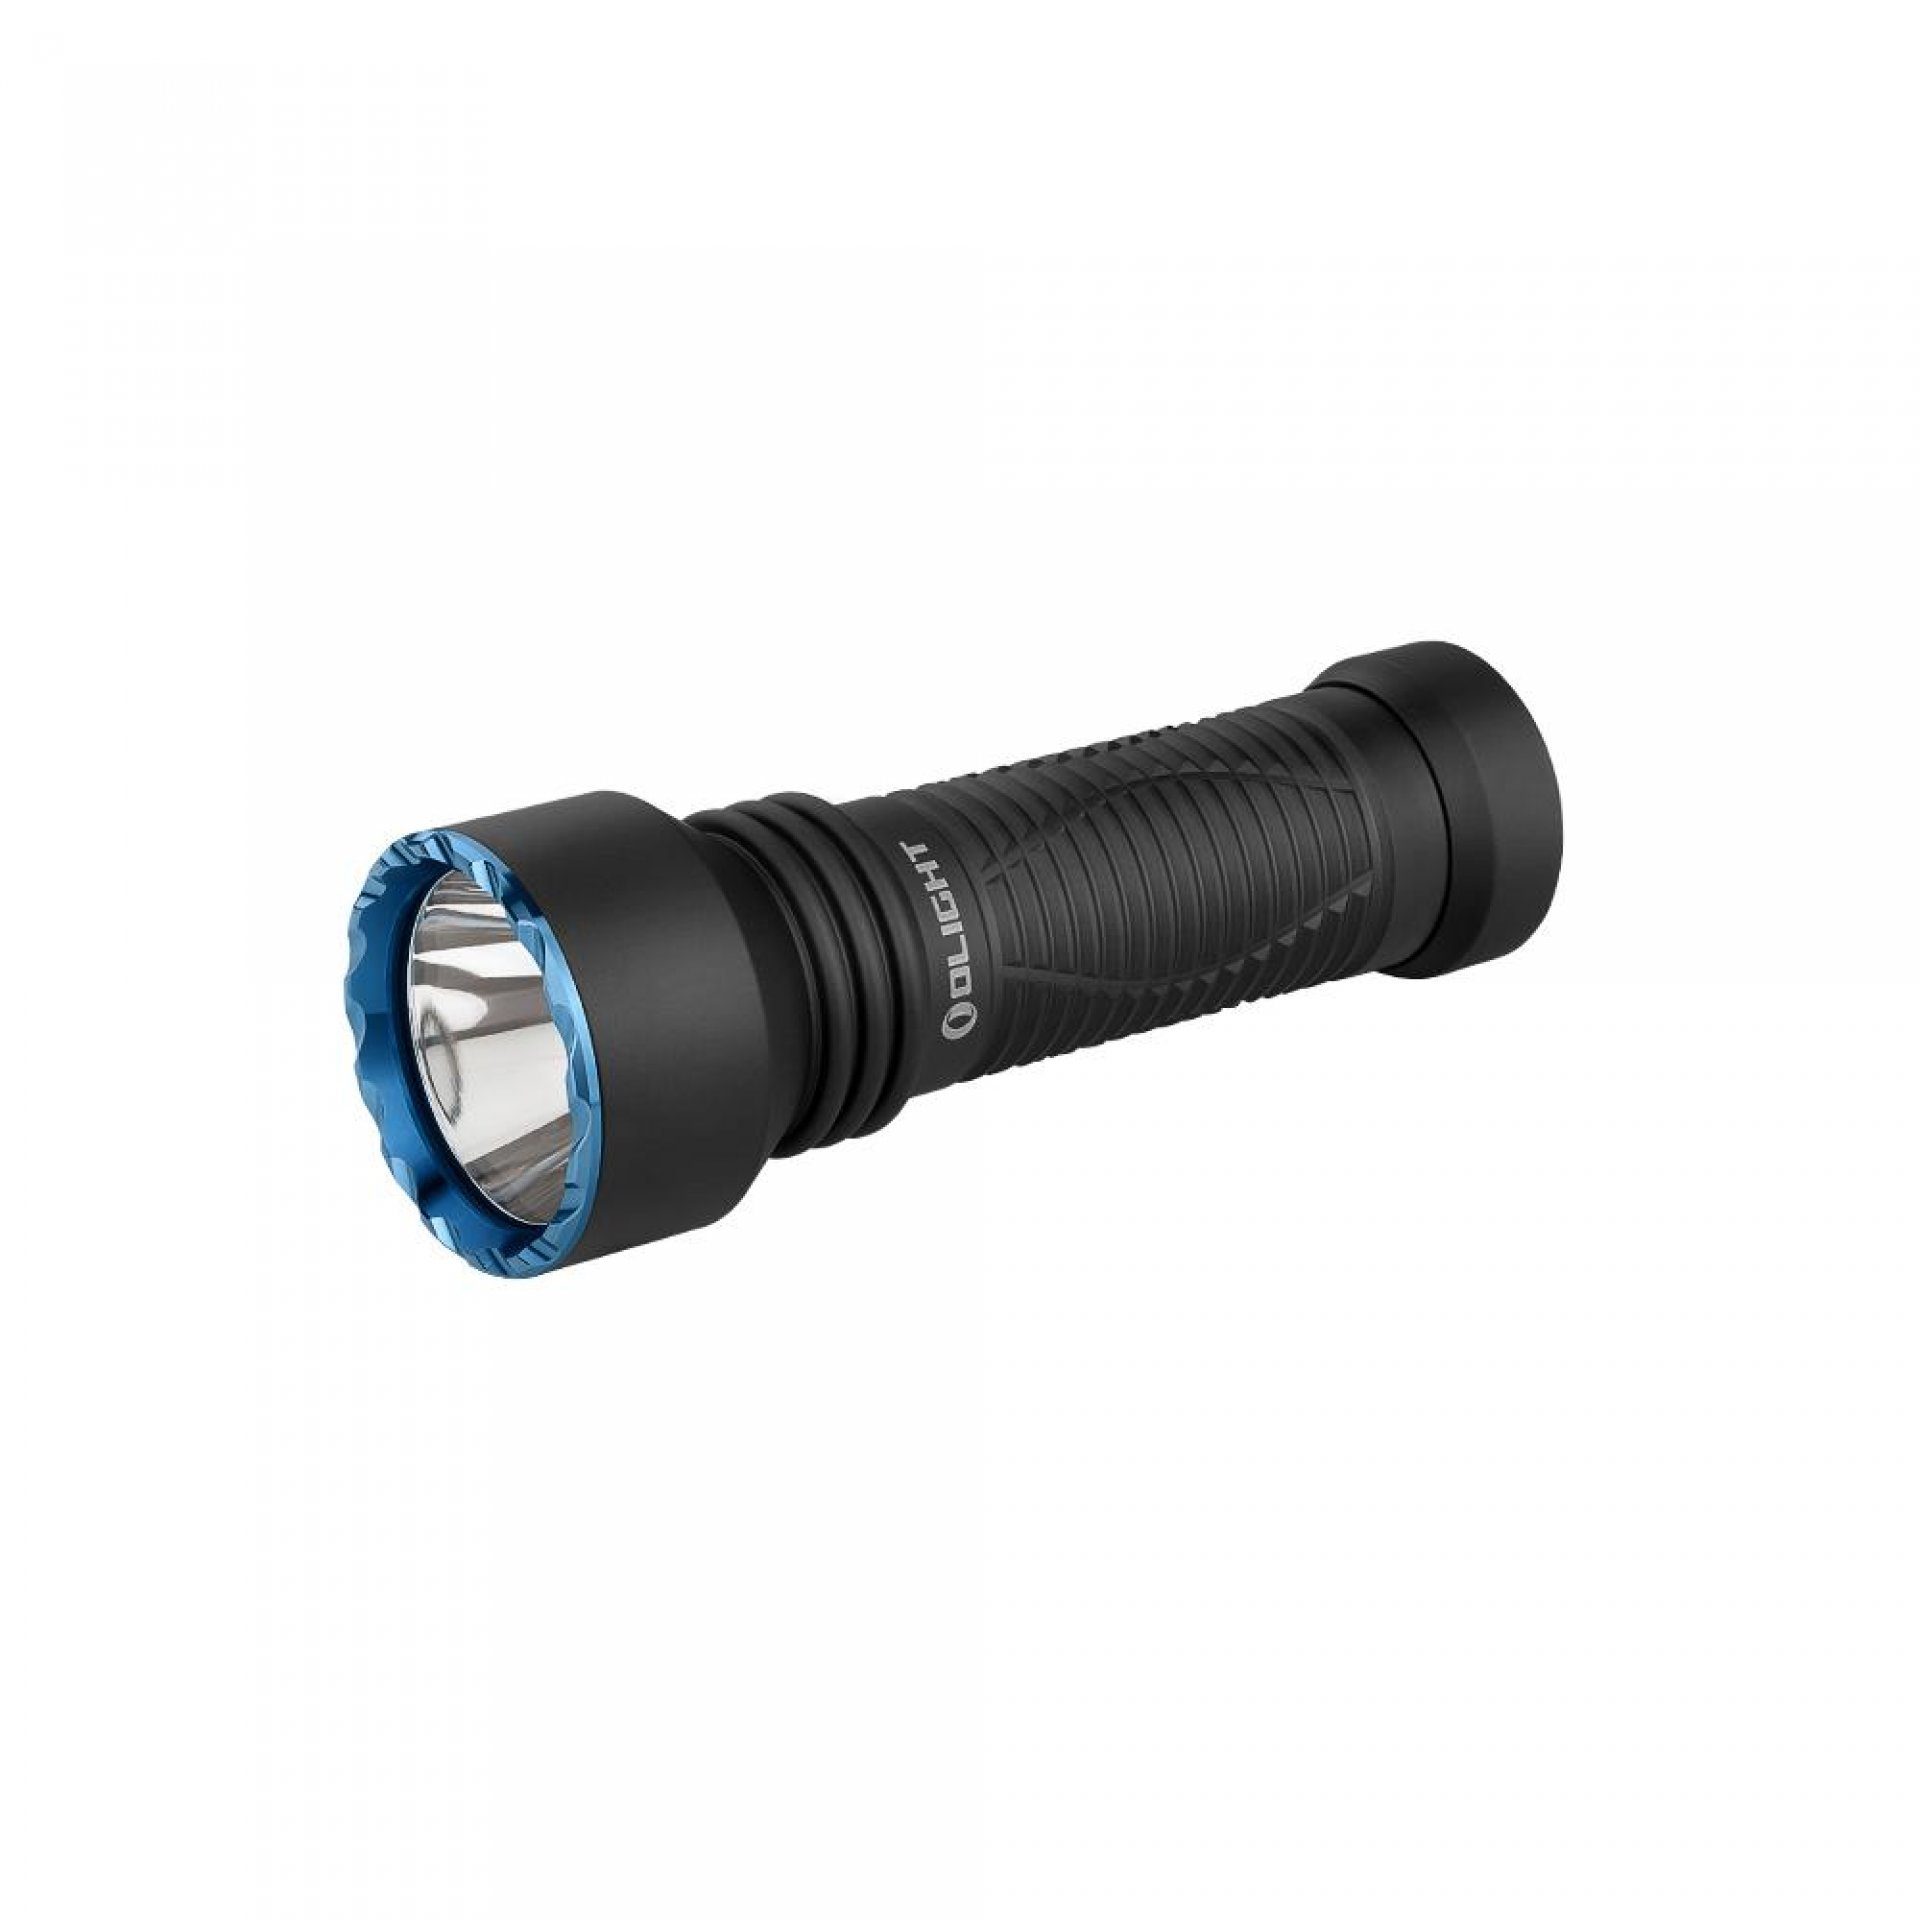 OLIGHT LED Taschenlampe Javelot Mini LED taktische Taschenlampe mit einer runden Lichtquelle, wiederaufbare IPX8 zoombare Handlampe für Notfall, Patrouille, Camping Schwarz